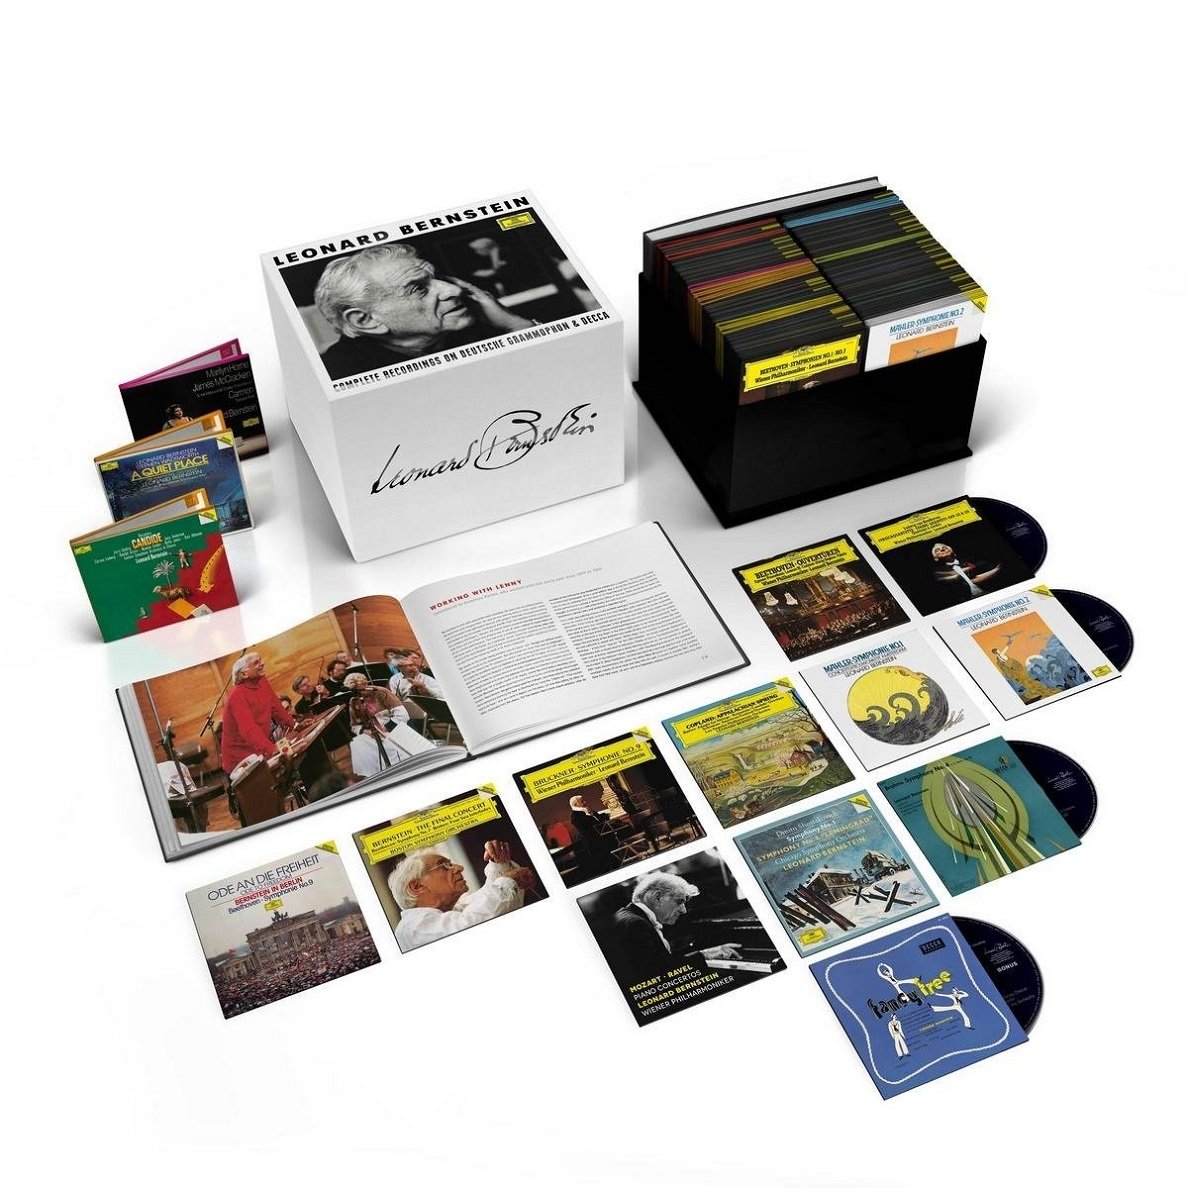 美国指挥家、钢琴家伦纳德·伯恩斯坦(Leonard Bernstein)诞辰100周年环球录音全集121CD[无损FLAC/34.00GB]百度云盘打包下载 影音资源 第2张